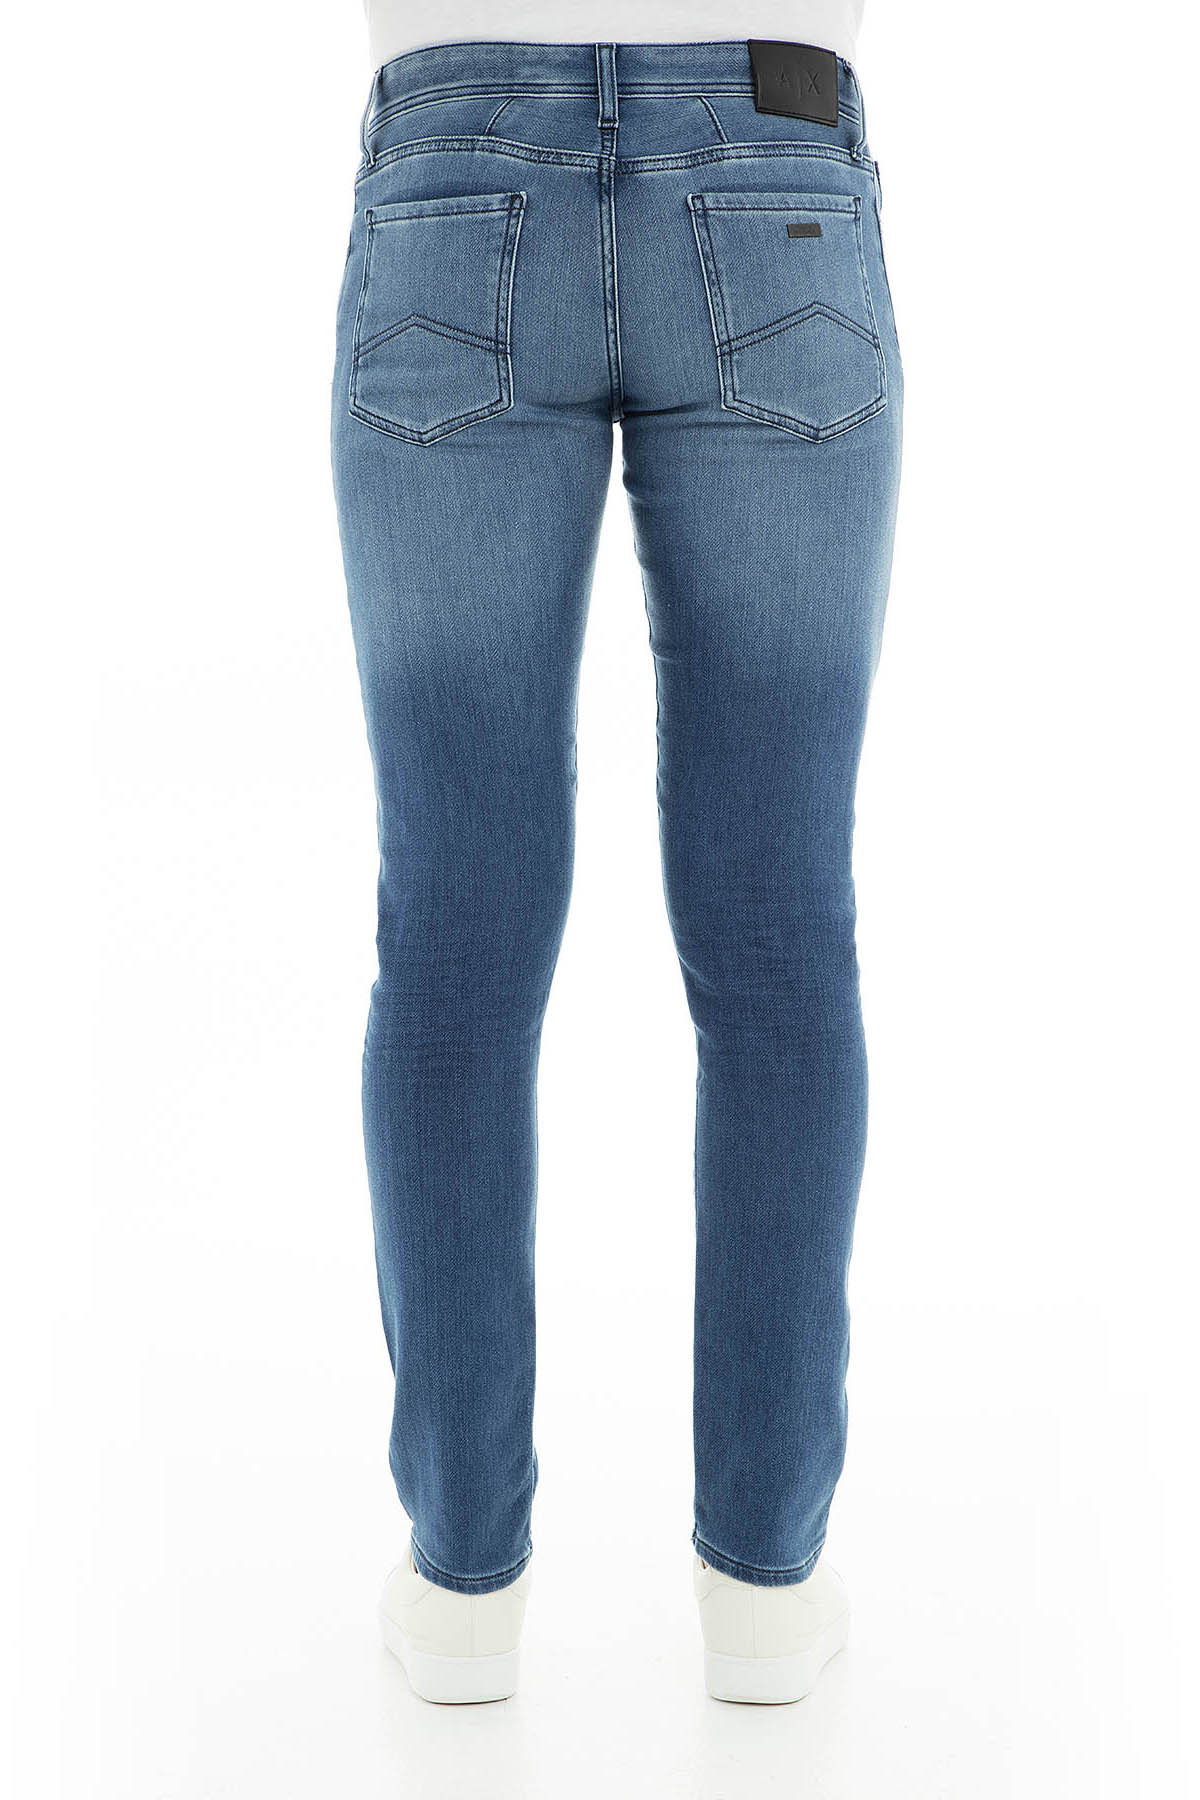 Armani Exchange J14 Jeans Erkek Kot Pantolon 3GZJ14 Z1QMZ 1500 İNDİGO